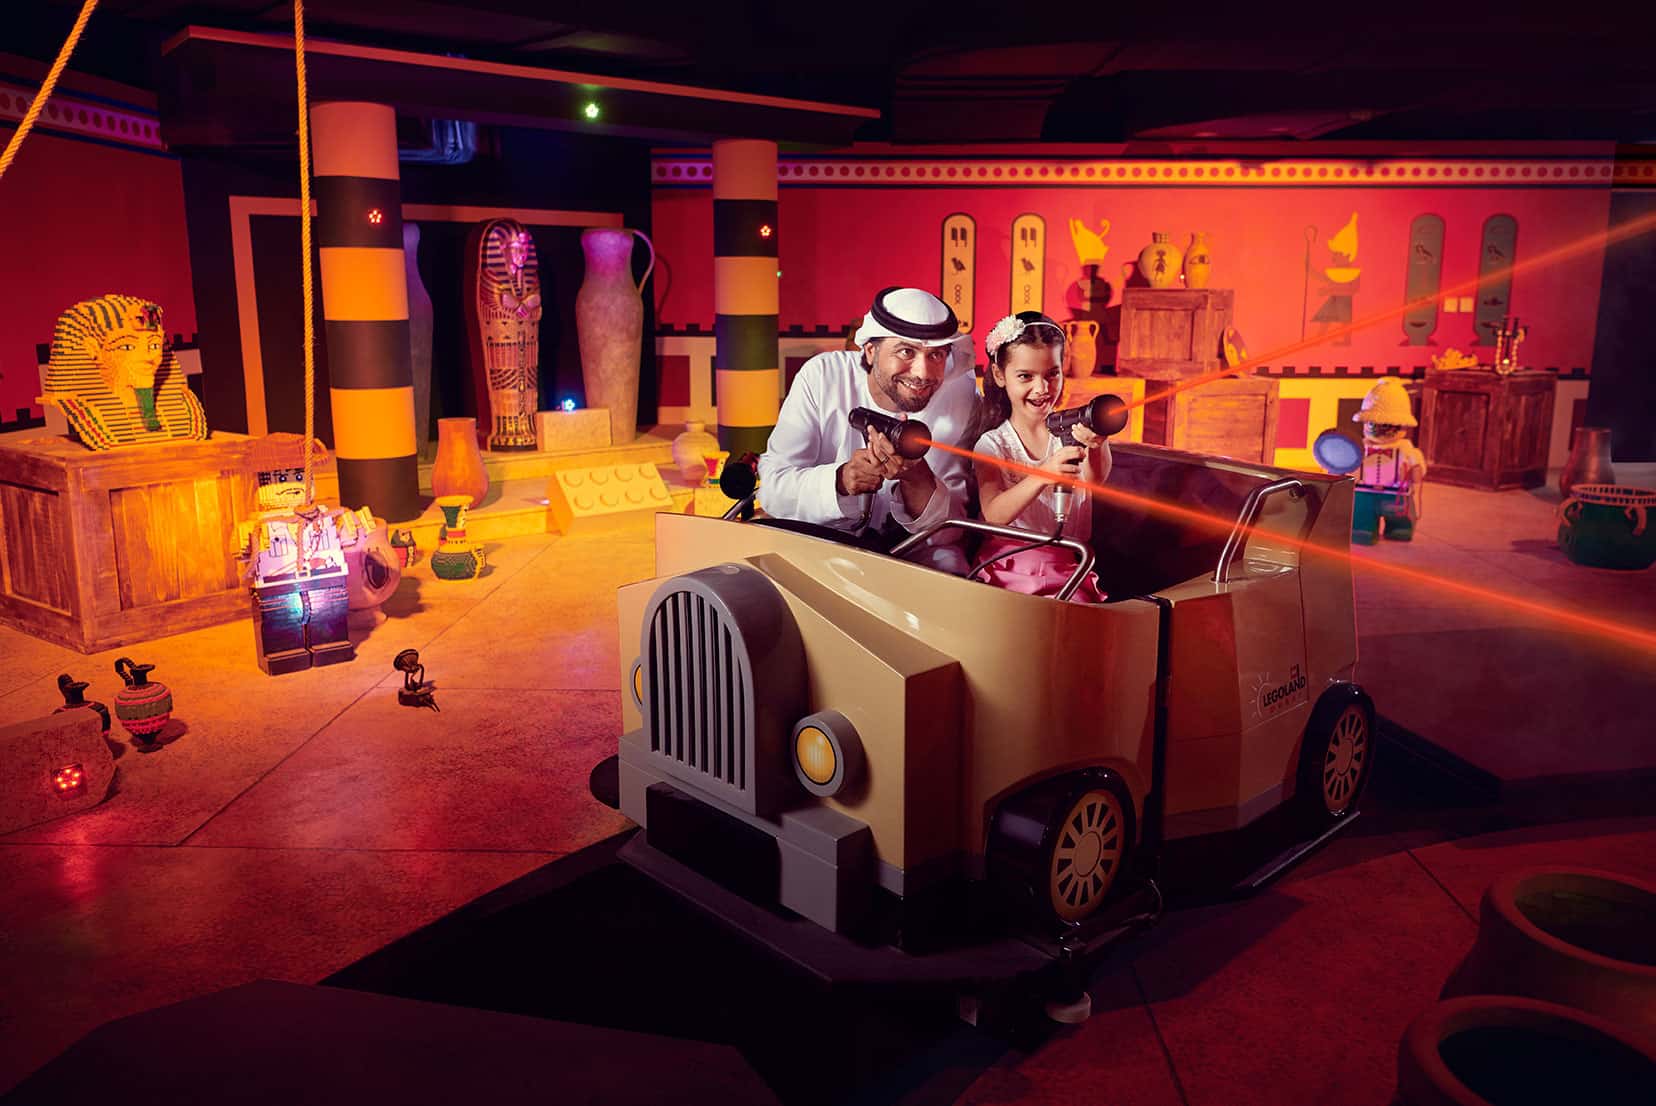 الوجهات الداخلية في دبي توفّر أجواءً مفعمة بالمرح والأنشطة التفاعلية والترفيهية التي تسعد الأطفال